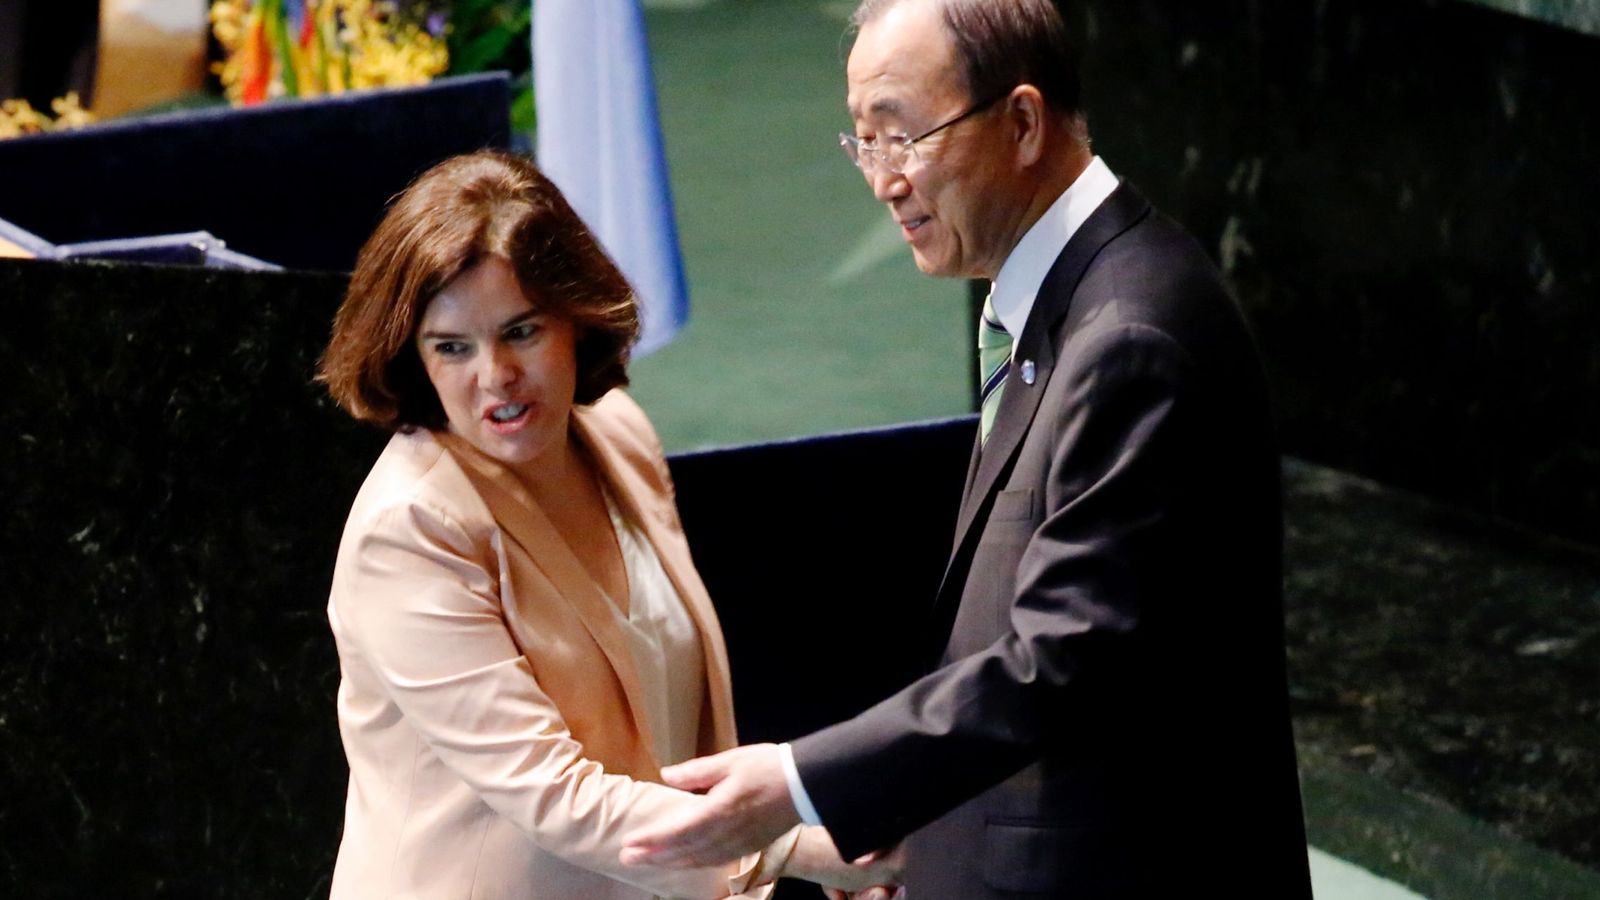 Foto: La vicepresidenta del Gobierno de España, Soraya Sáenz de Santamaría (i) saluda al secretario general de la ONU, Ban Ki-moon (d). (EFE)